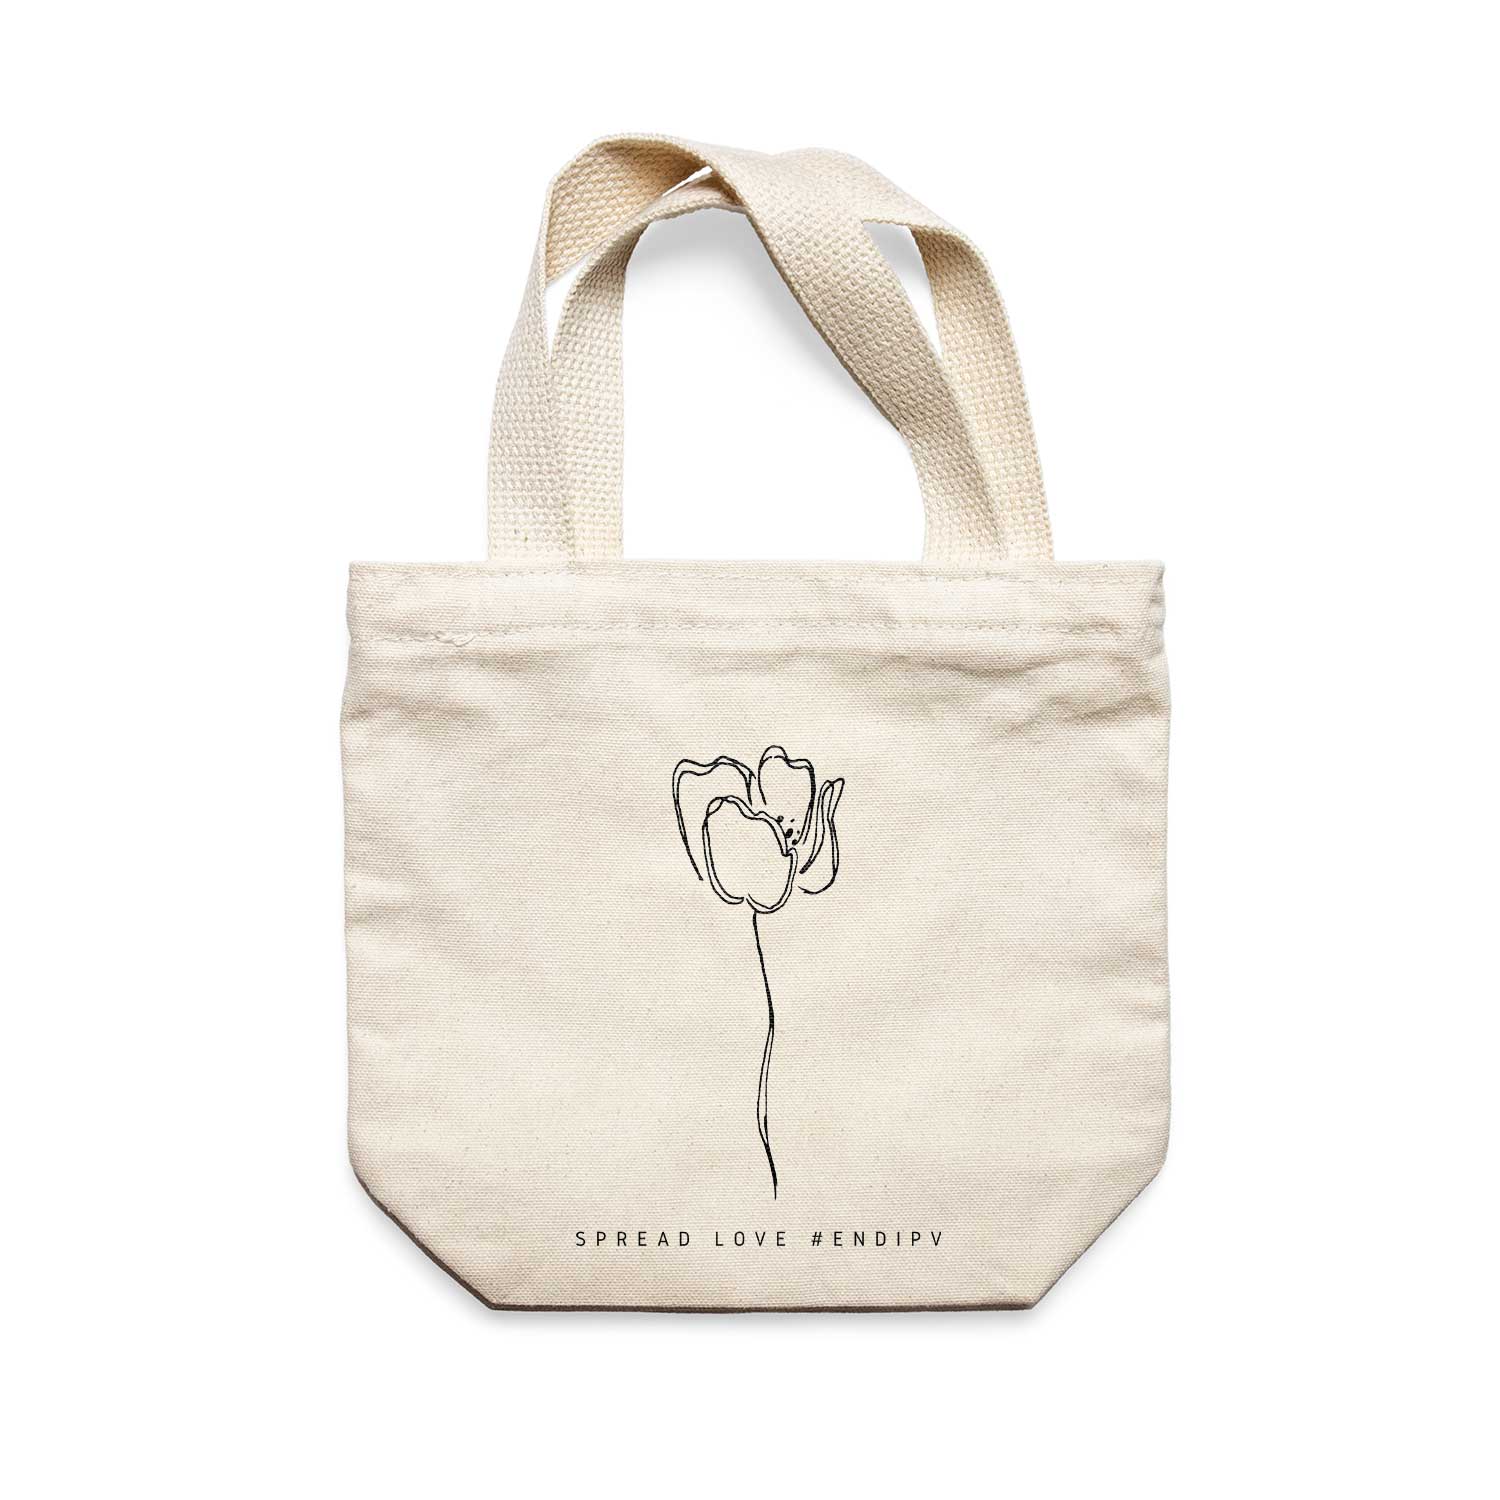 תיק צד לנשים וגברים מבד 100% כותנה טבעית בעיצוב One Line Flower - Sofia Tote Bag מציור מקורי של גאיה